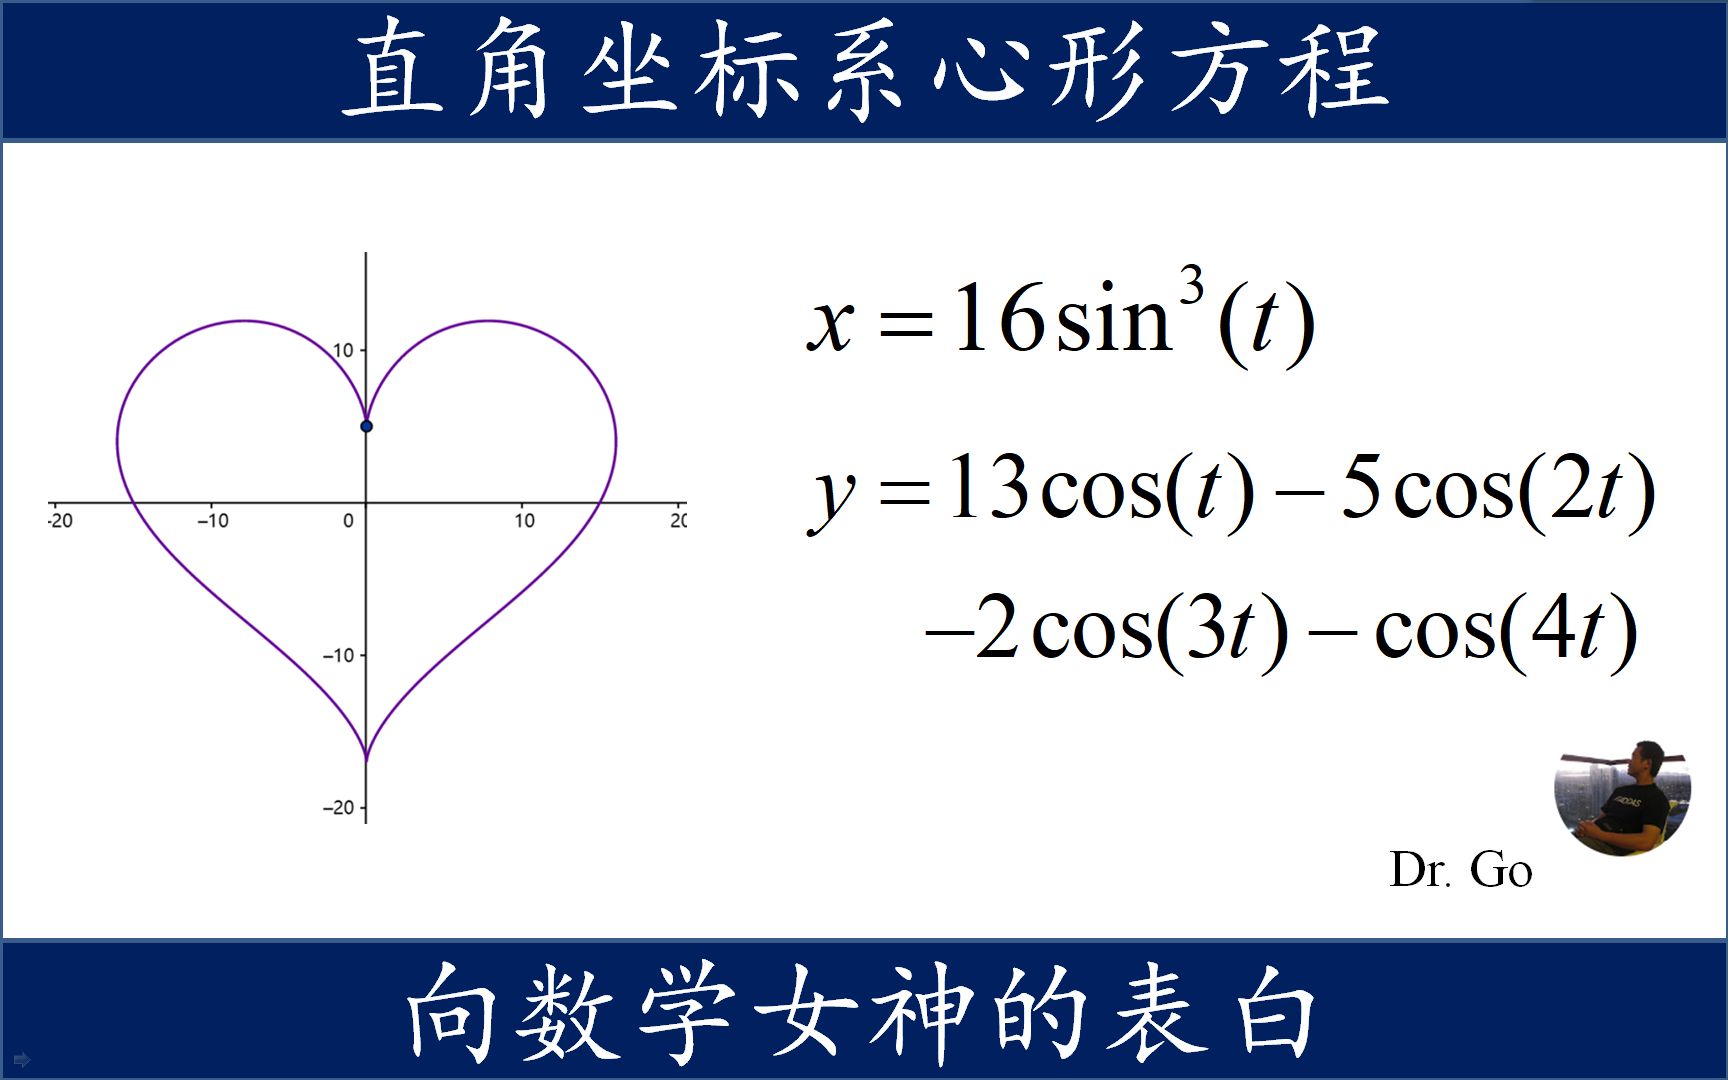 对数学女神强有力的表白方程,用正弦余弦函数组合出心形曲线